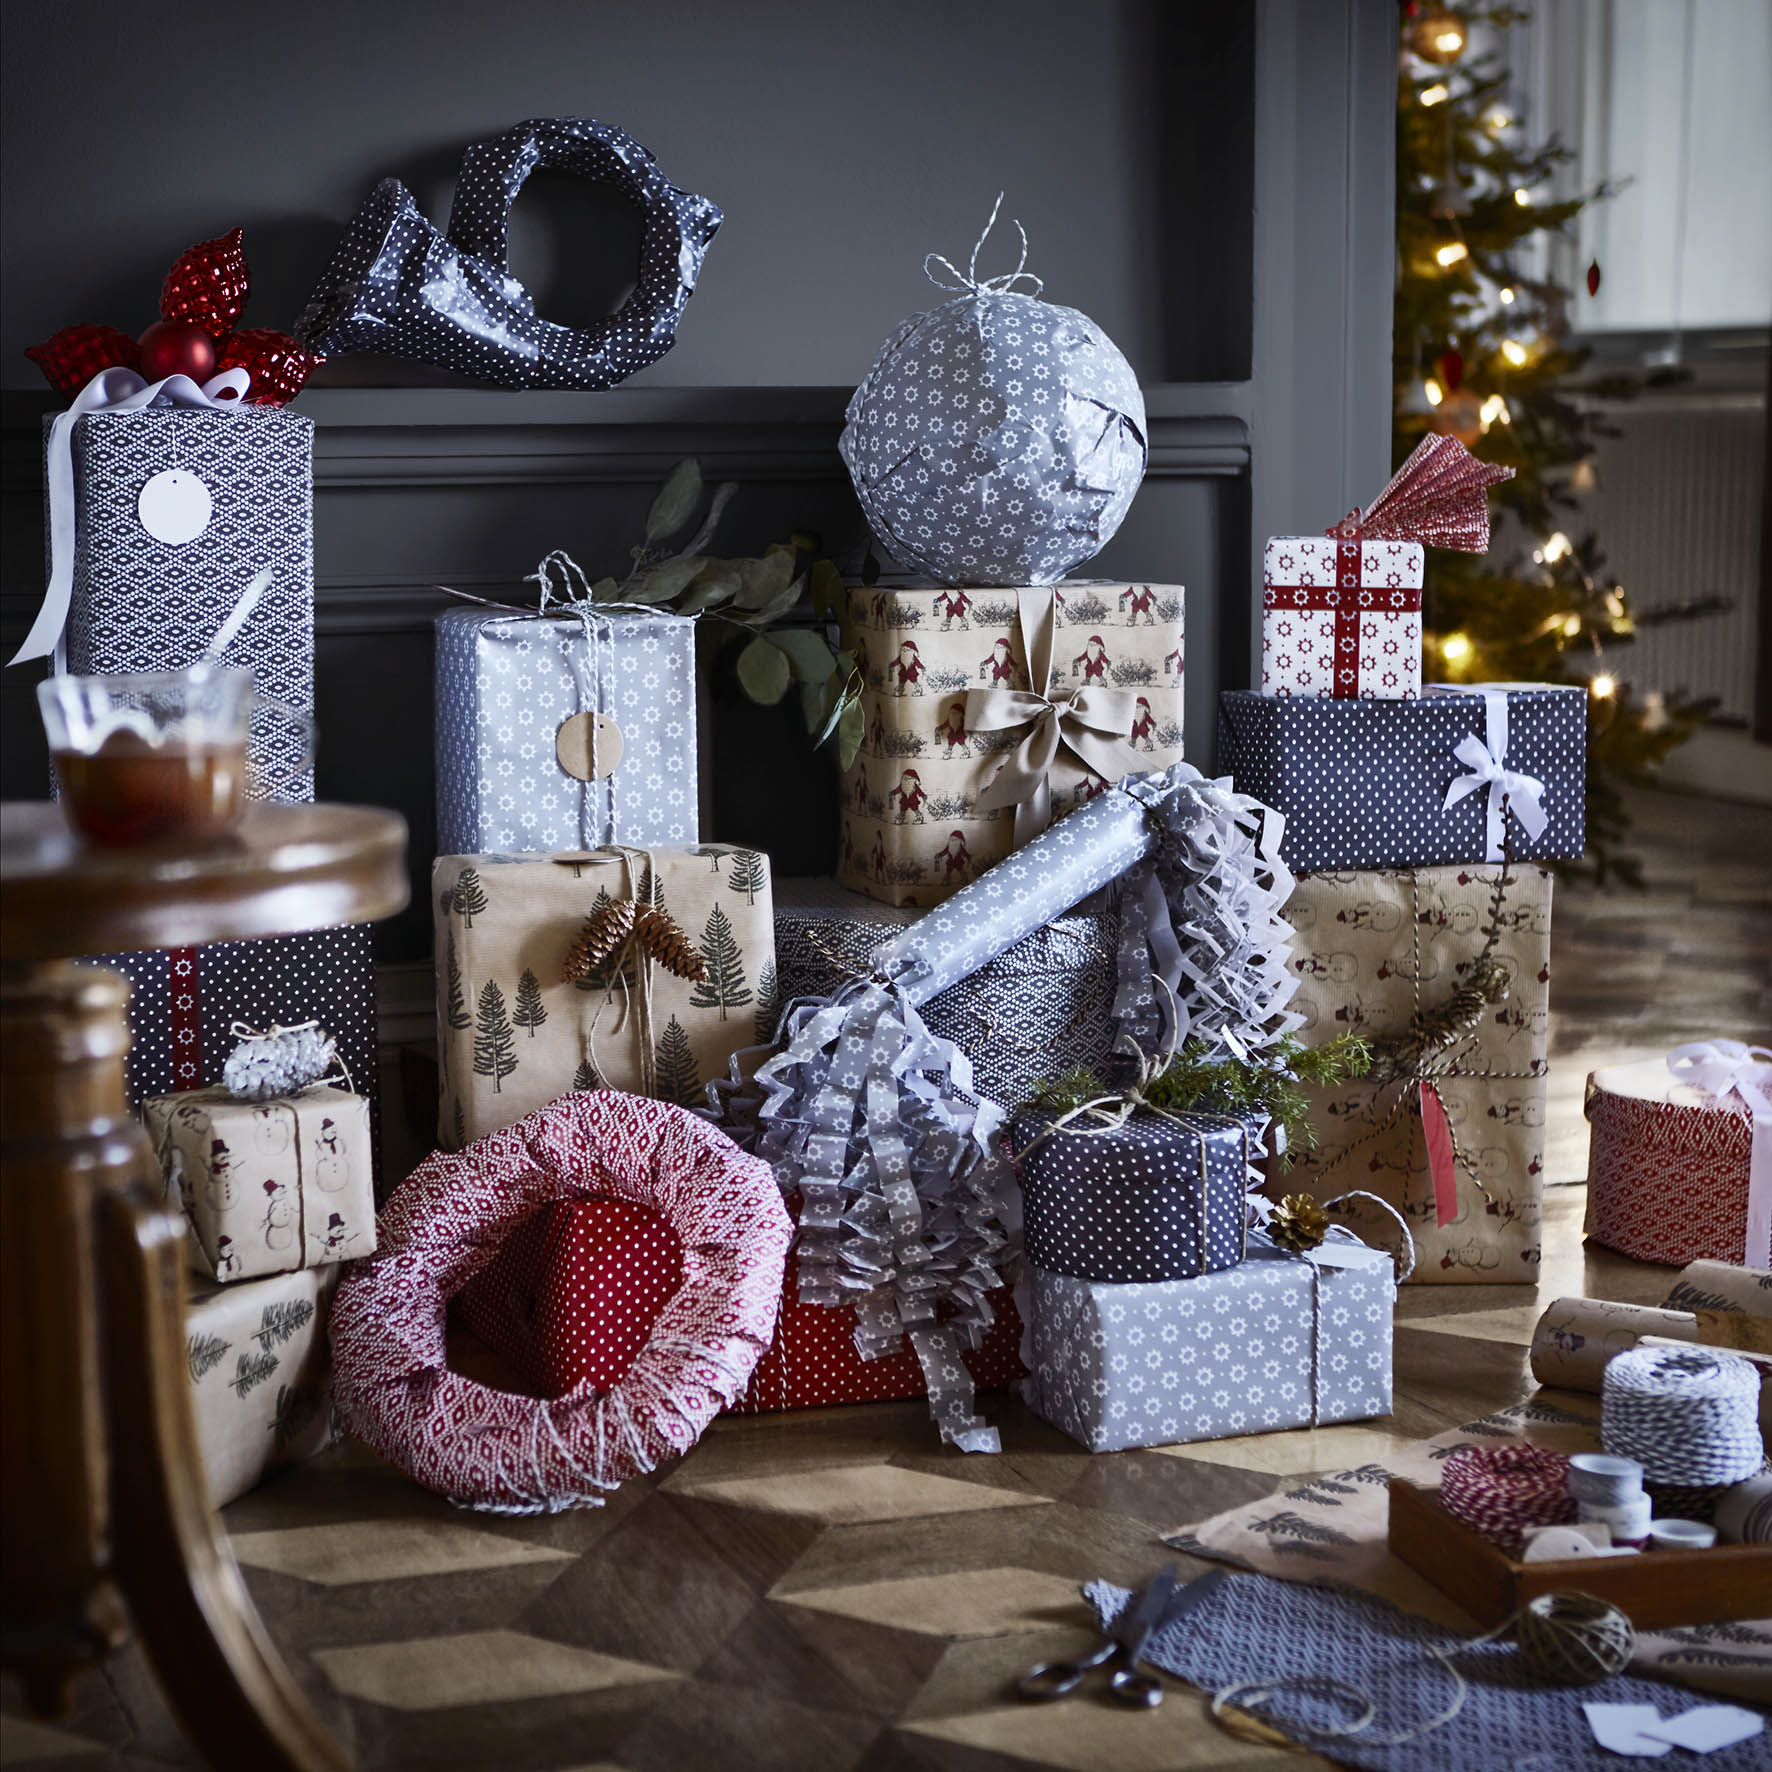 Kerst 2015. Je kerstcadeaus zien er prachtihg uit met het pakpapier uit de Vinter 2015 collectie van Ikea